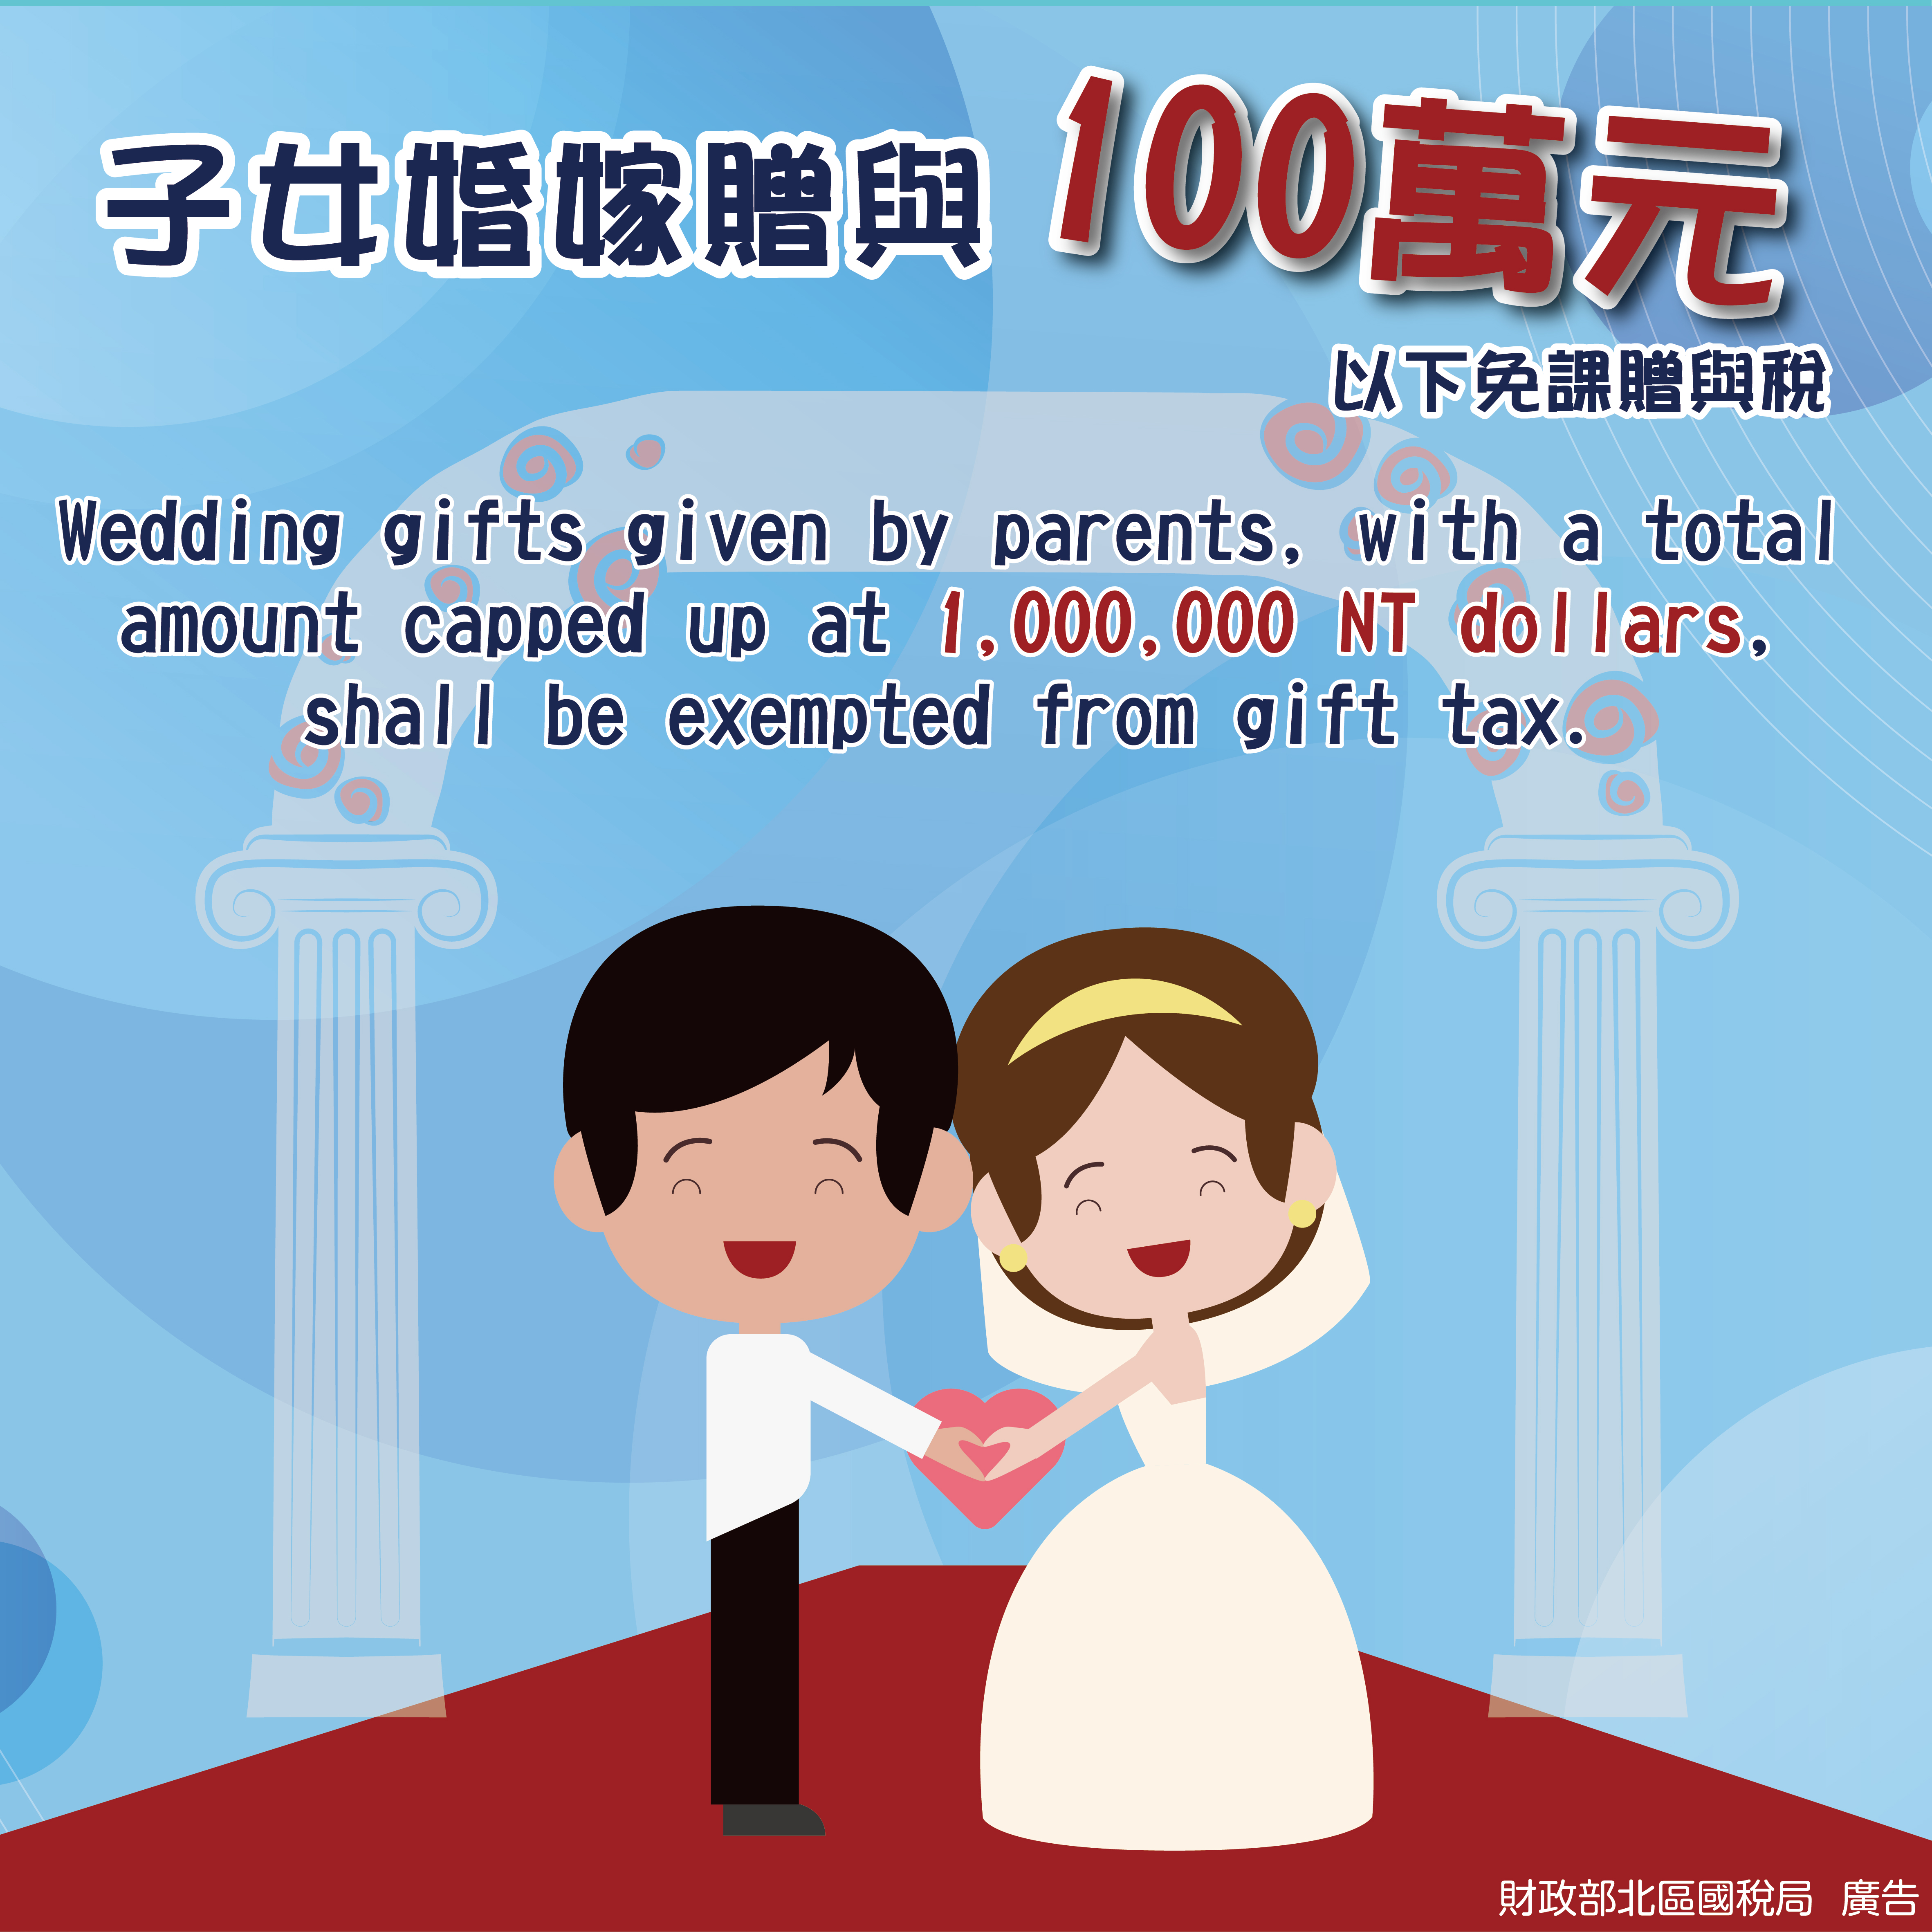 子女婚嫁贈與100萬元以下免課贈與稅